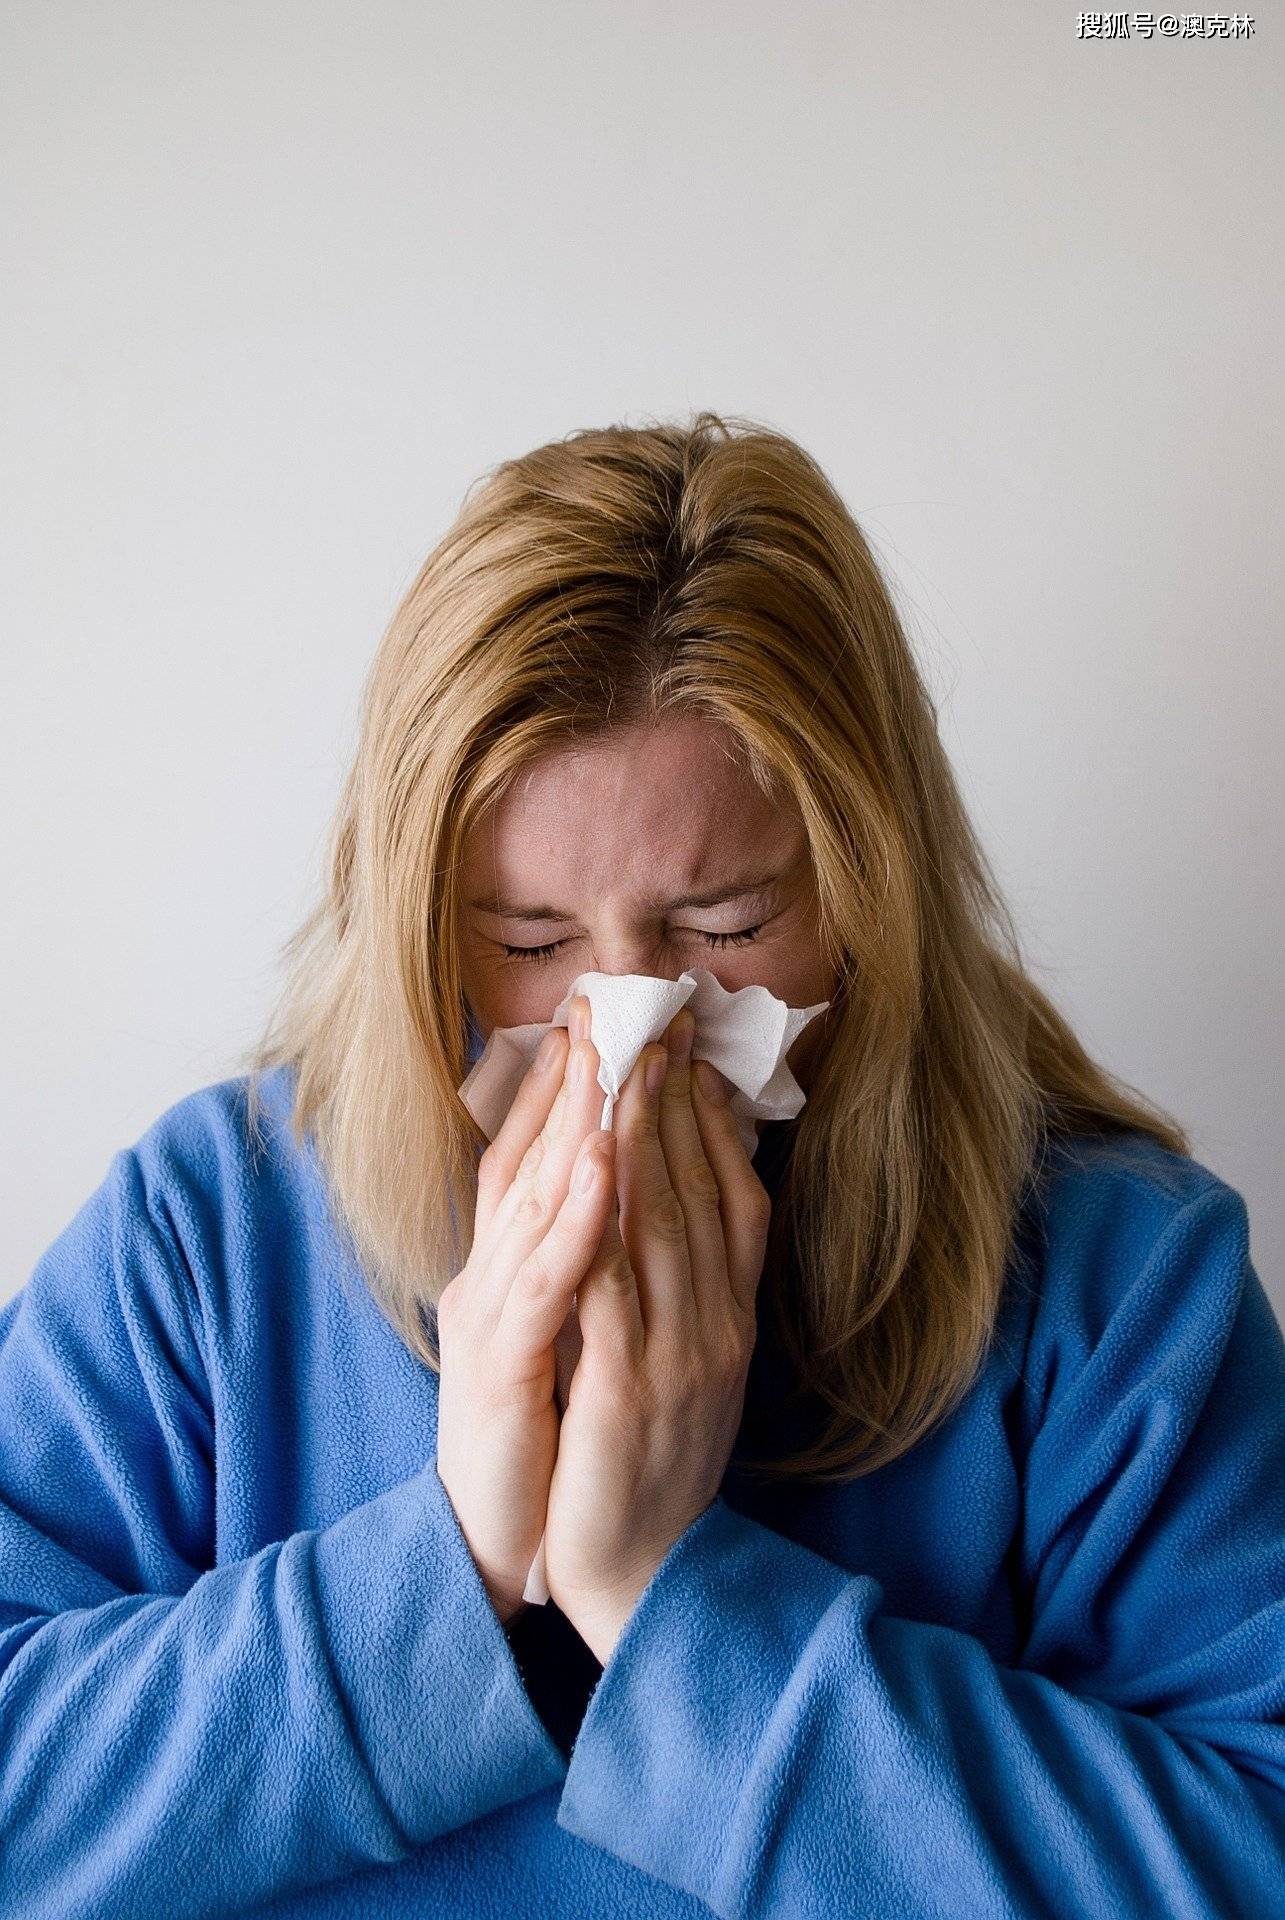 鼻炎难受,冲洗更痛苦,如何自然治愈?